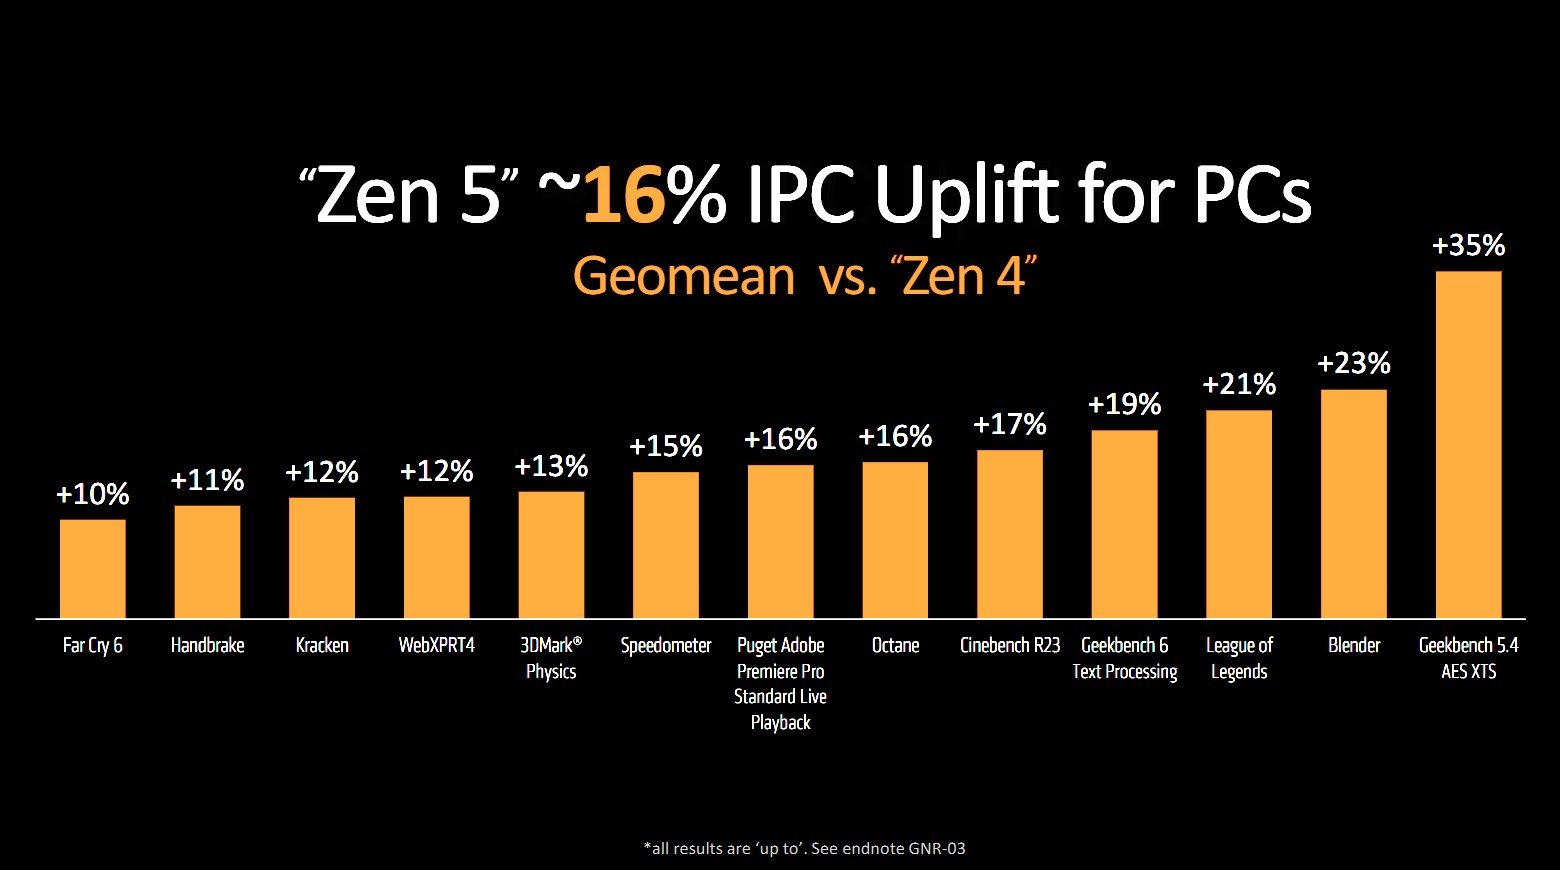 IPC increases for AMD's Zen 5 CPUs.